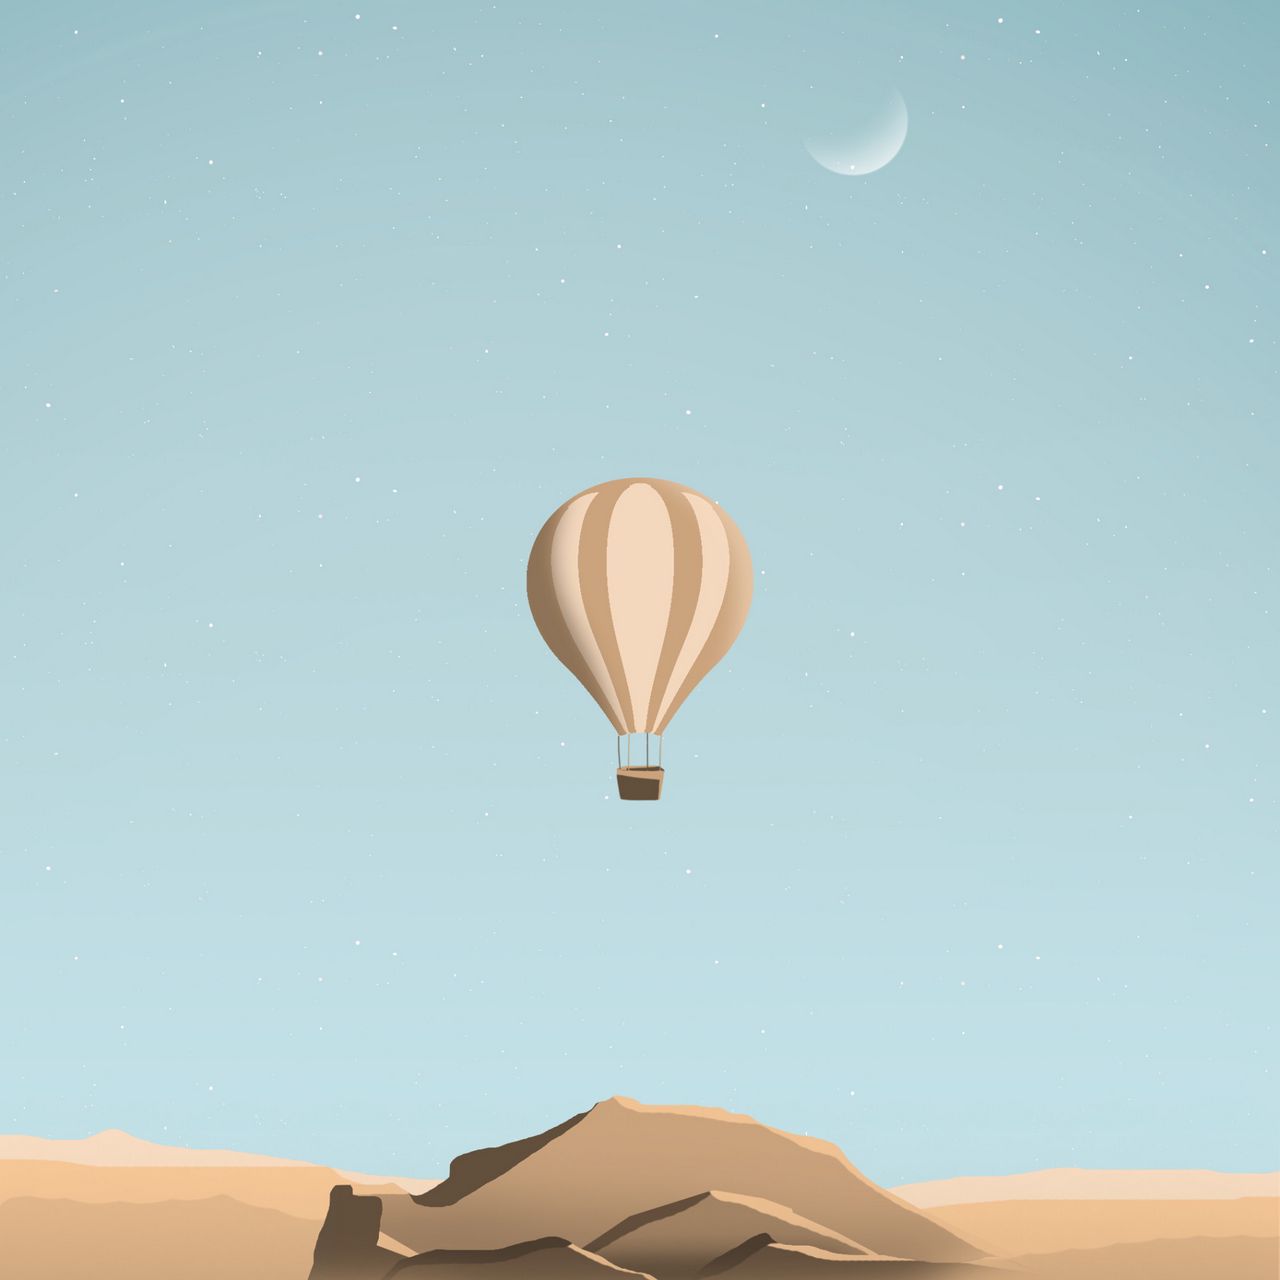 Desert Art And  Hot Air Balloon Wallpapers